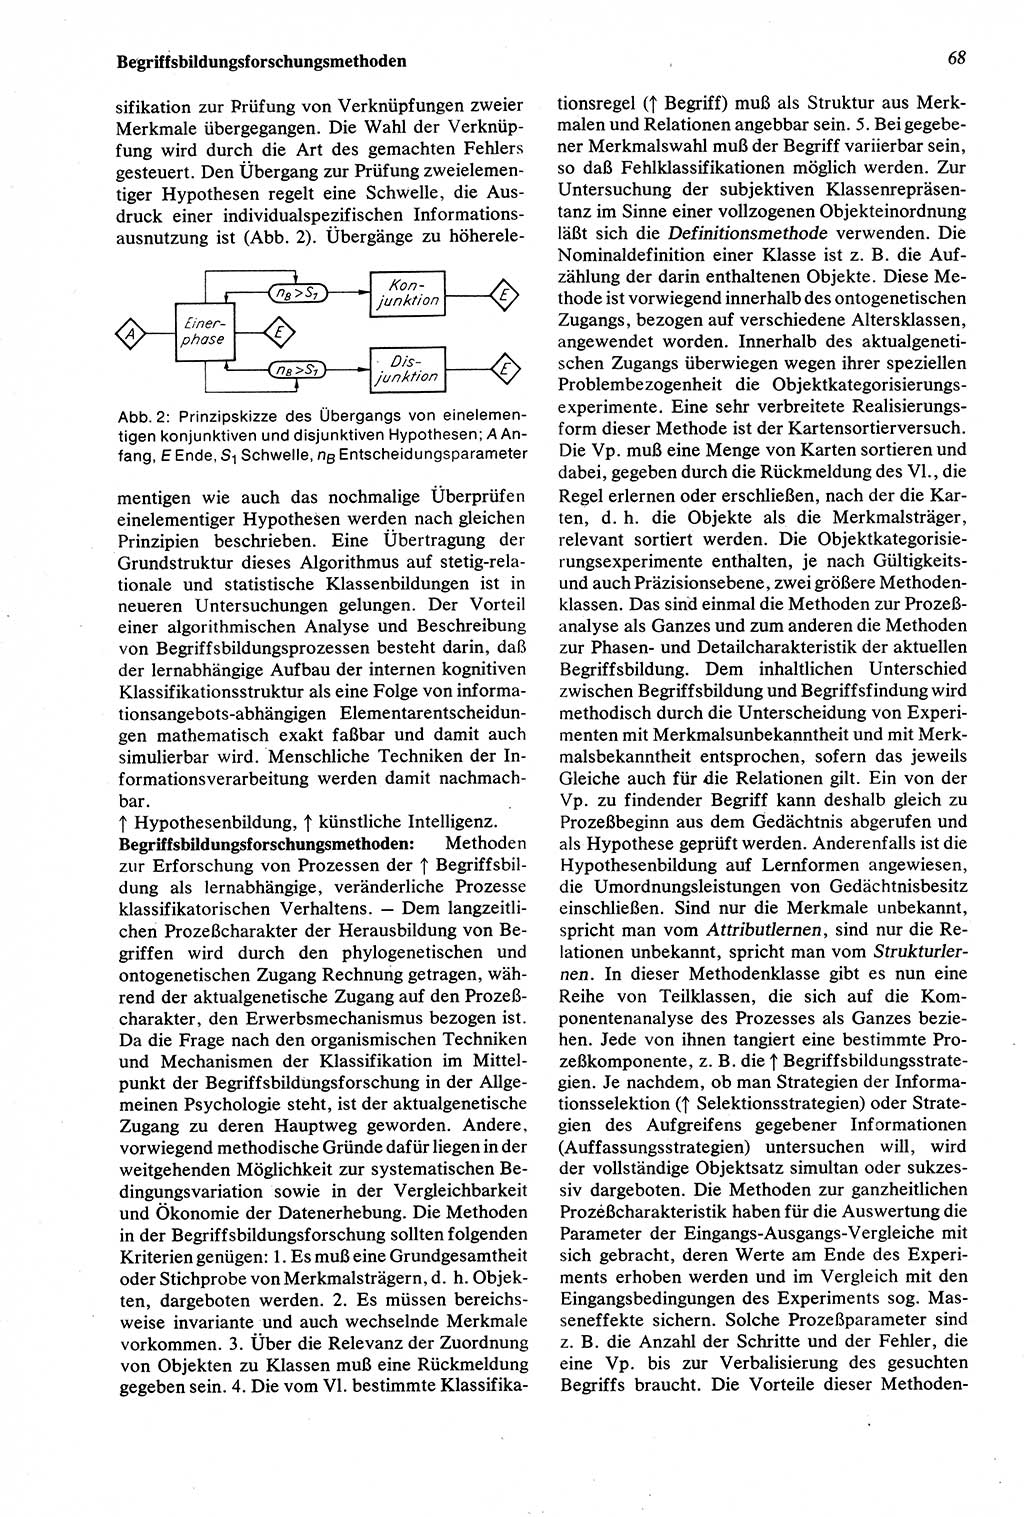 Wörterbuch der Psychologie [Deutsche Demokratische Republik (DDR)] 1976, Seite 68 (Wb. Psych. DDR 1976, S. 68)